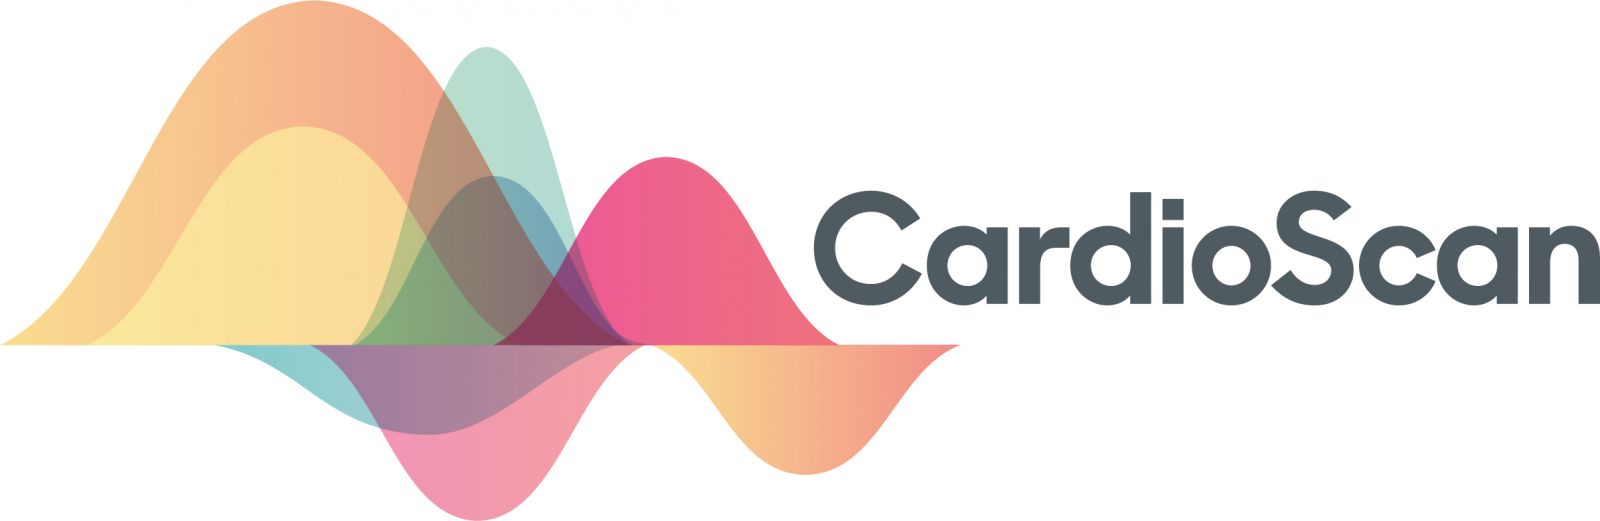 Cardioscan Ltd